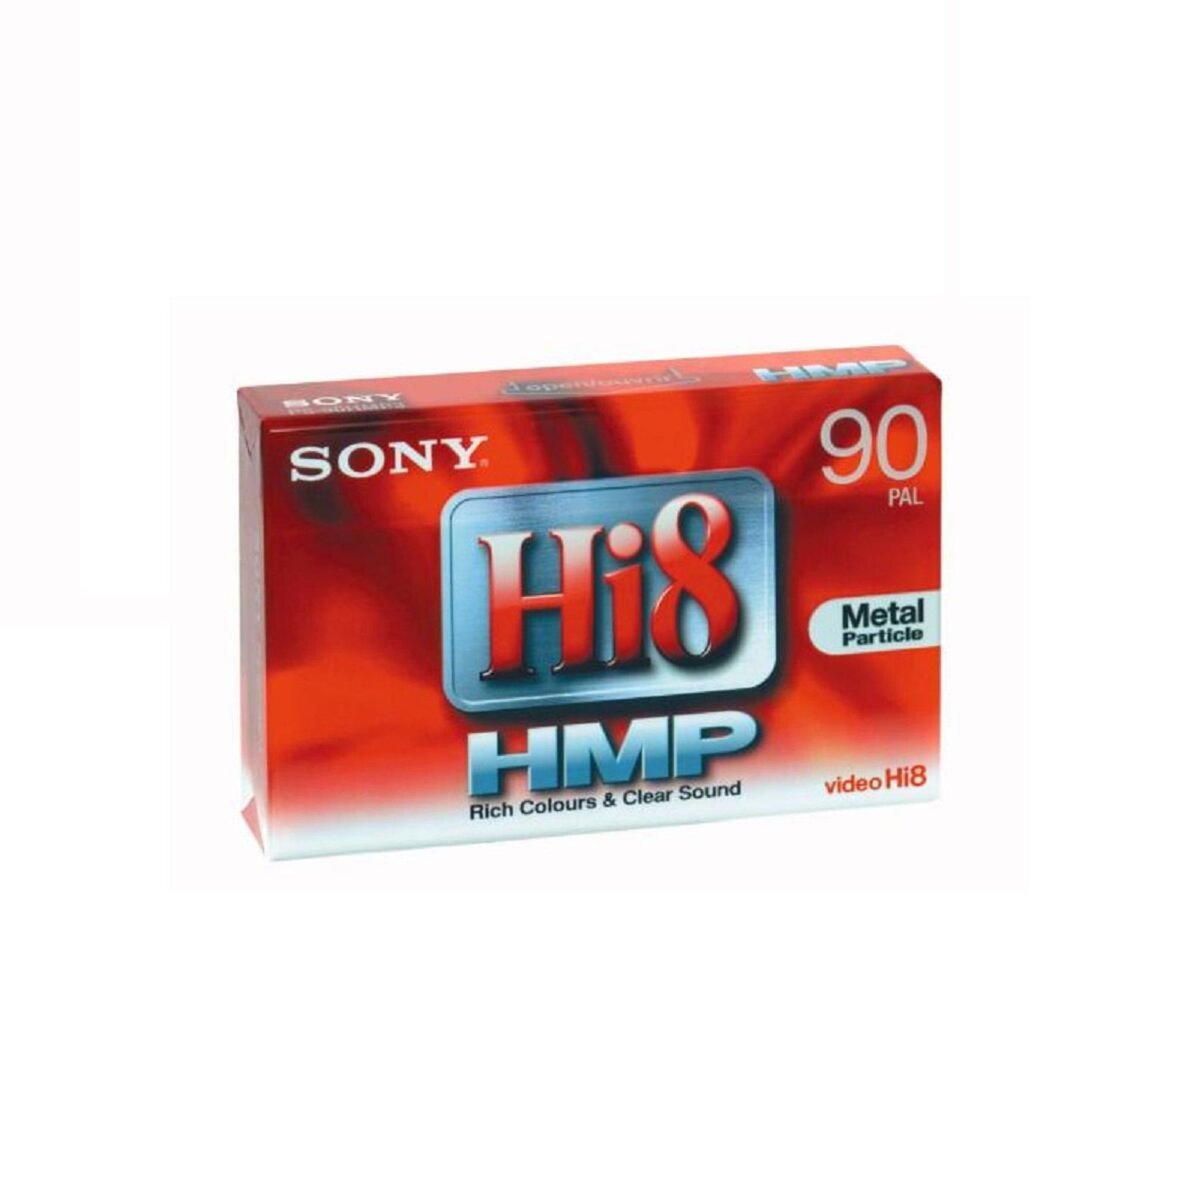 SONY Cassette vidéo Hi8 HMP pour caméscope 90 min PAL